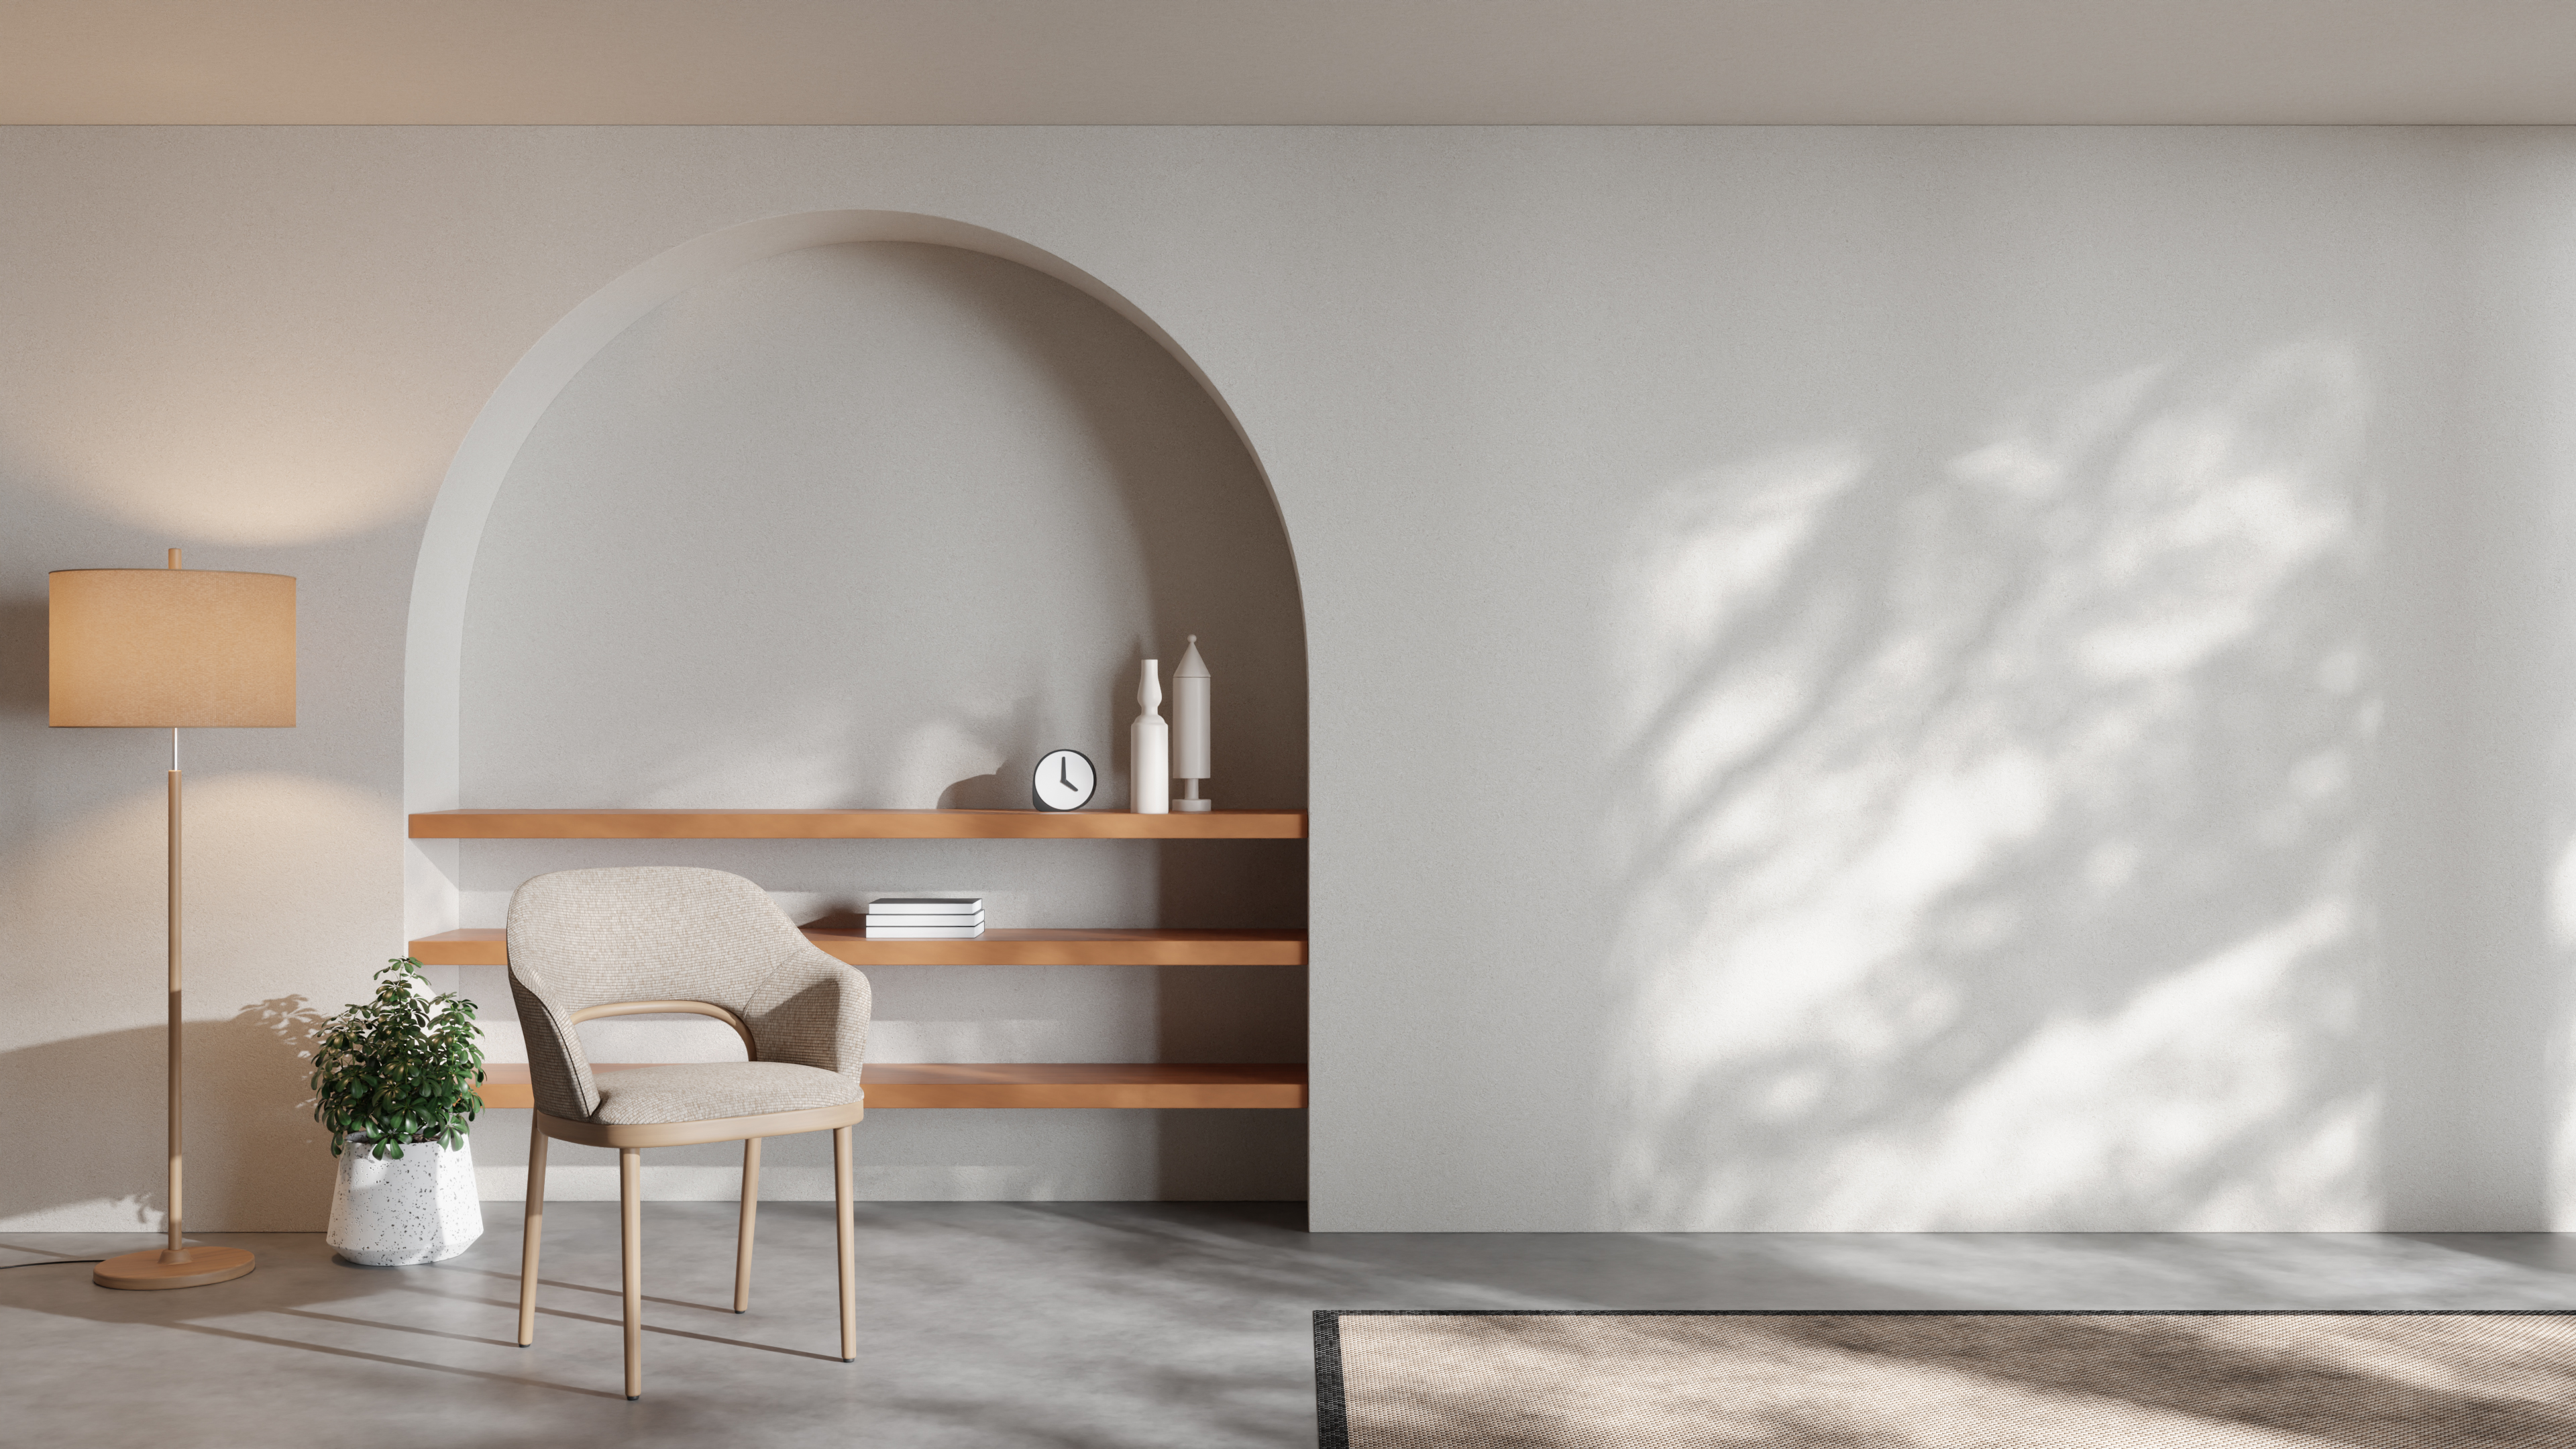 minimalist-interior-design